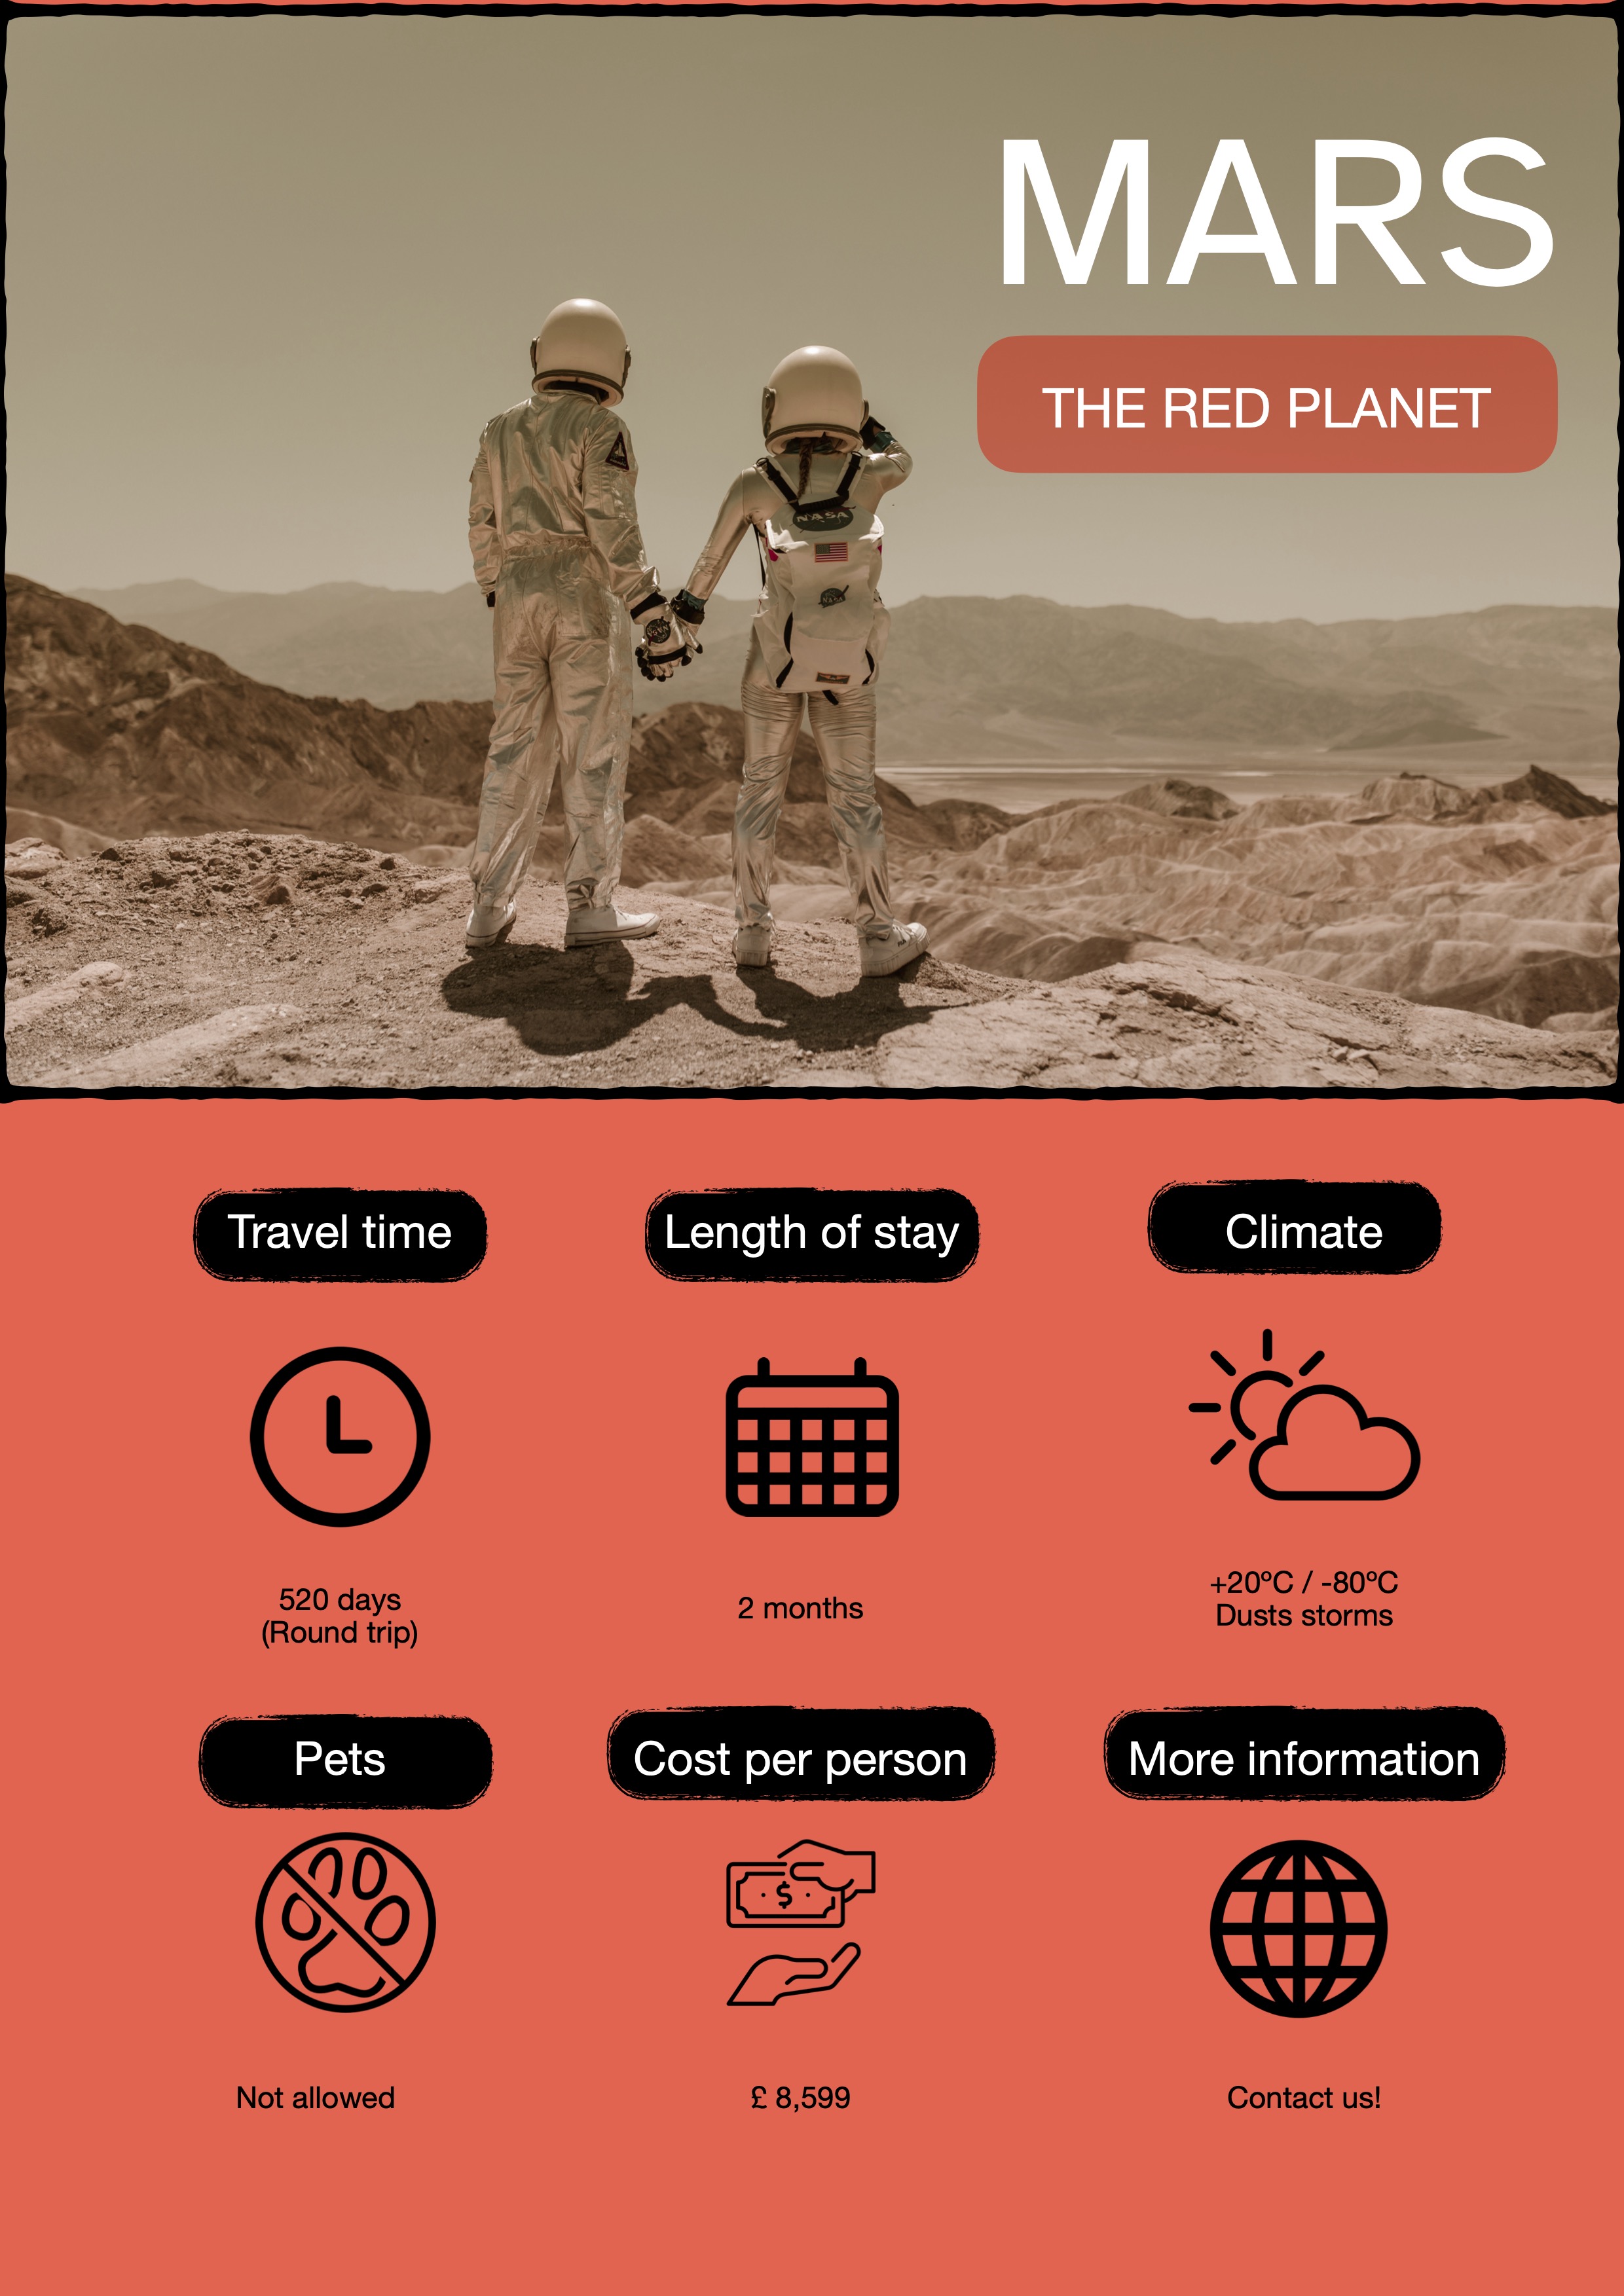 Folleto de viaje con información sobre el planeta Marte